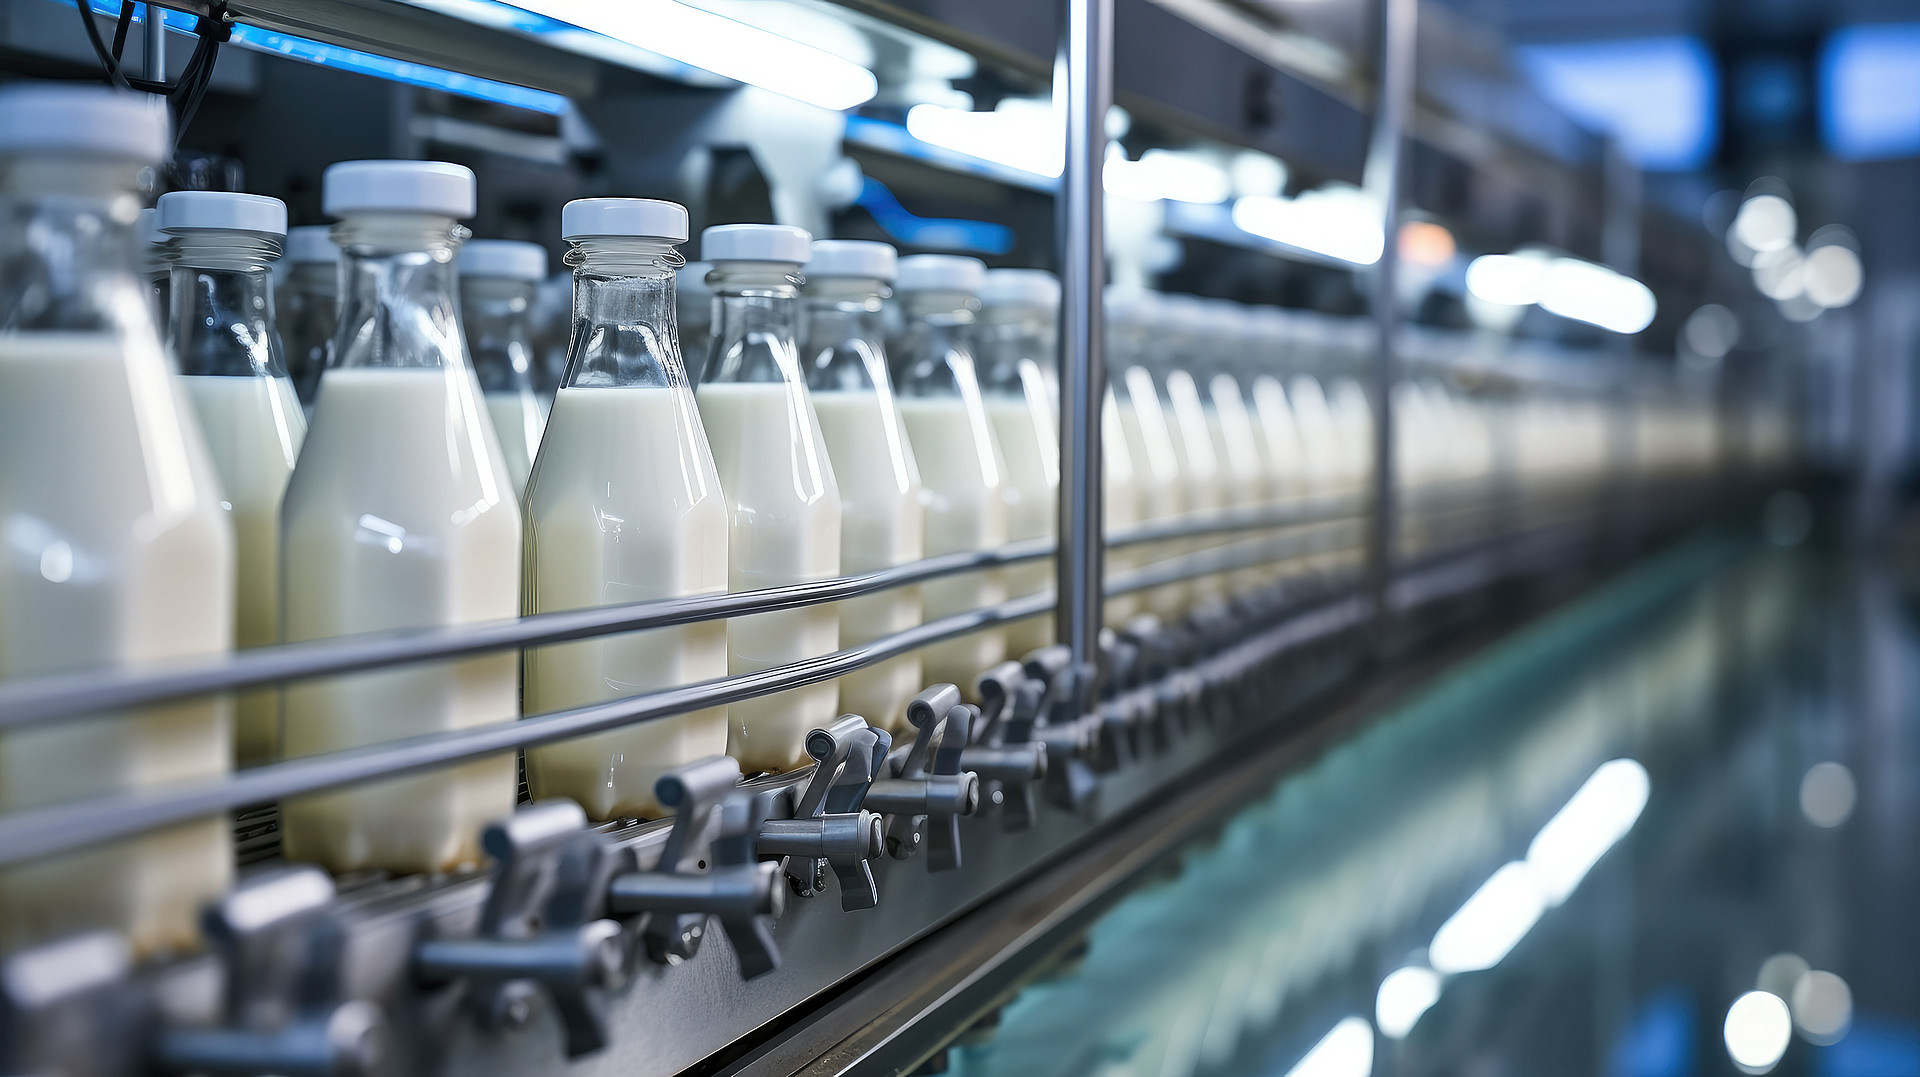 Abfüllen von Milch oder Joghurt in Plastikflaschen auf einem Fließband in einer Fabrik, Konzept mit automatisierter Lebensmittelproduktion.